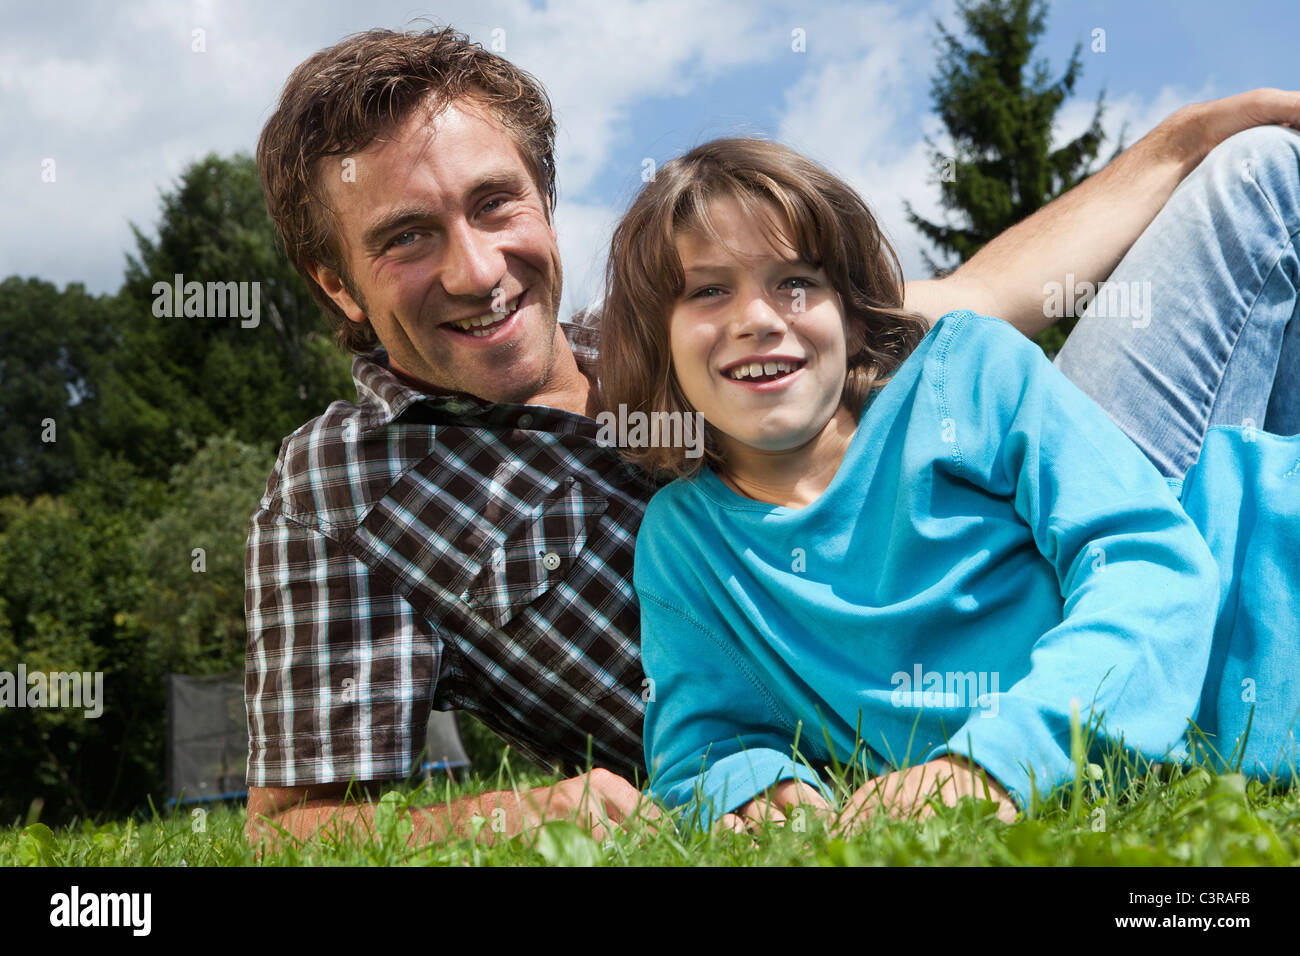 Allemagne, Munich, père et fils (10-11 ans) dans la région de jardin, smiling, portrait Banque D'Images